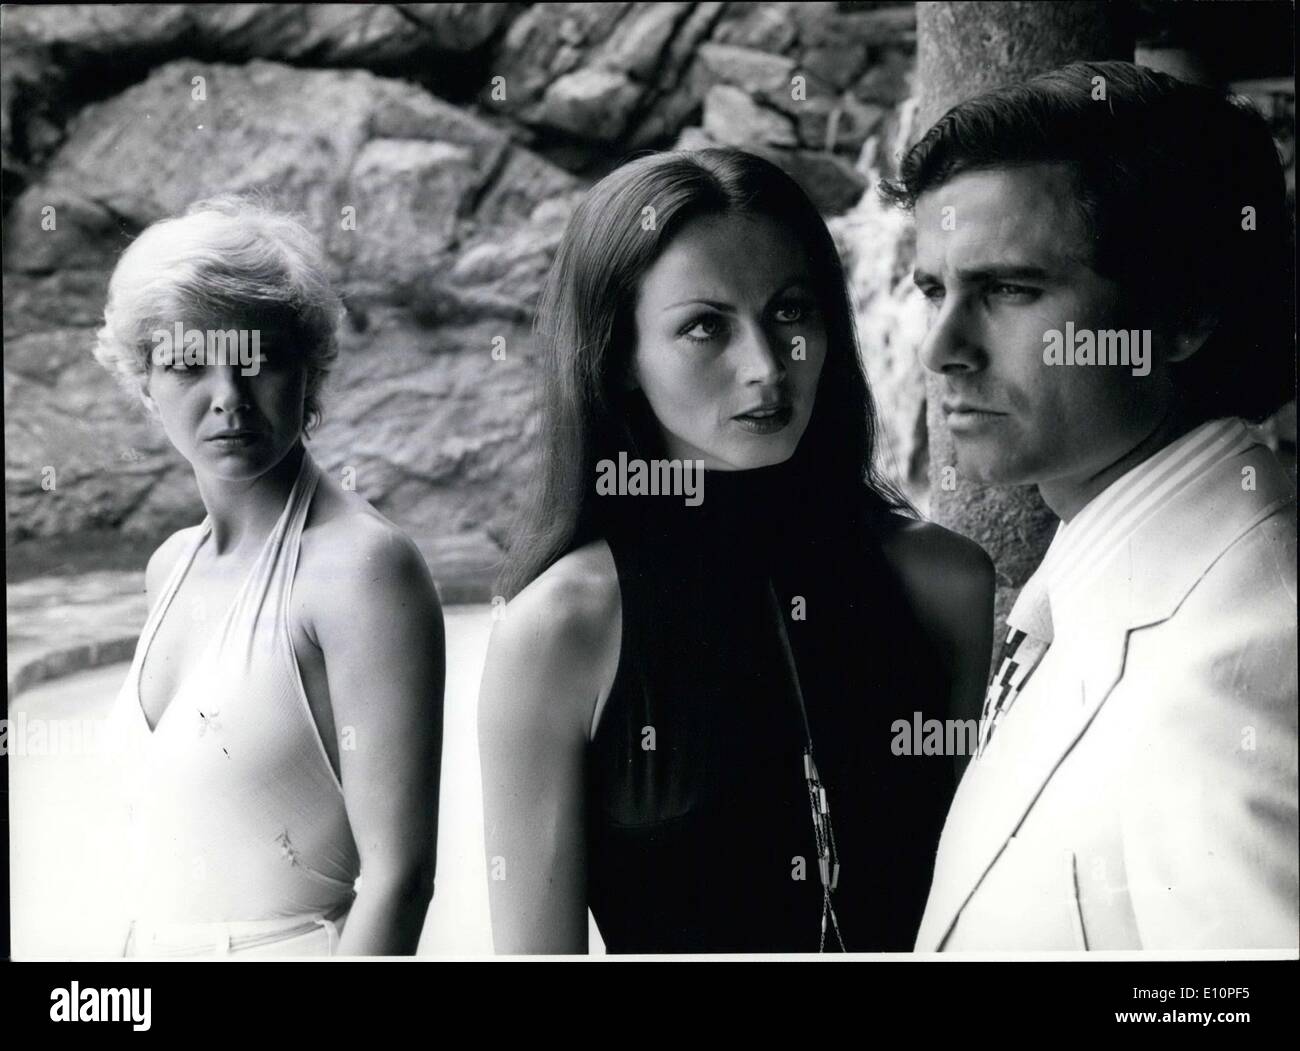 Septembre 11, 1973 - Gila von Weitershausen, Andrea Jonasson, et Nino Castelnuovo(de gauche à droite) star dans le nouveau film Banque D'Images